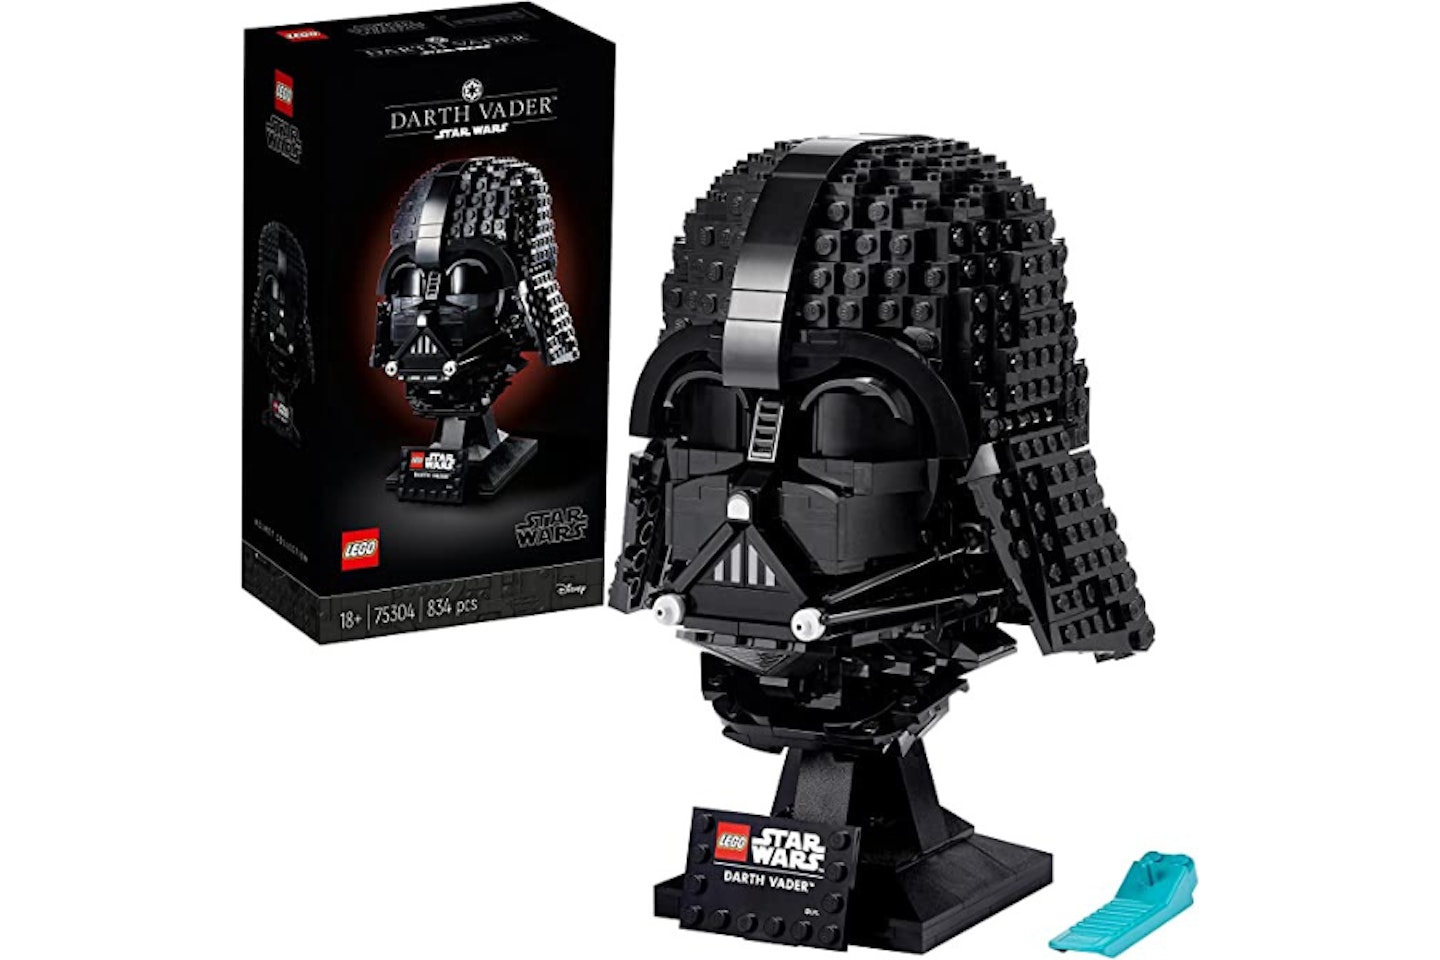 LEGO 75304 Star Wars Darth Vader